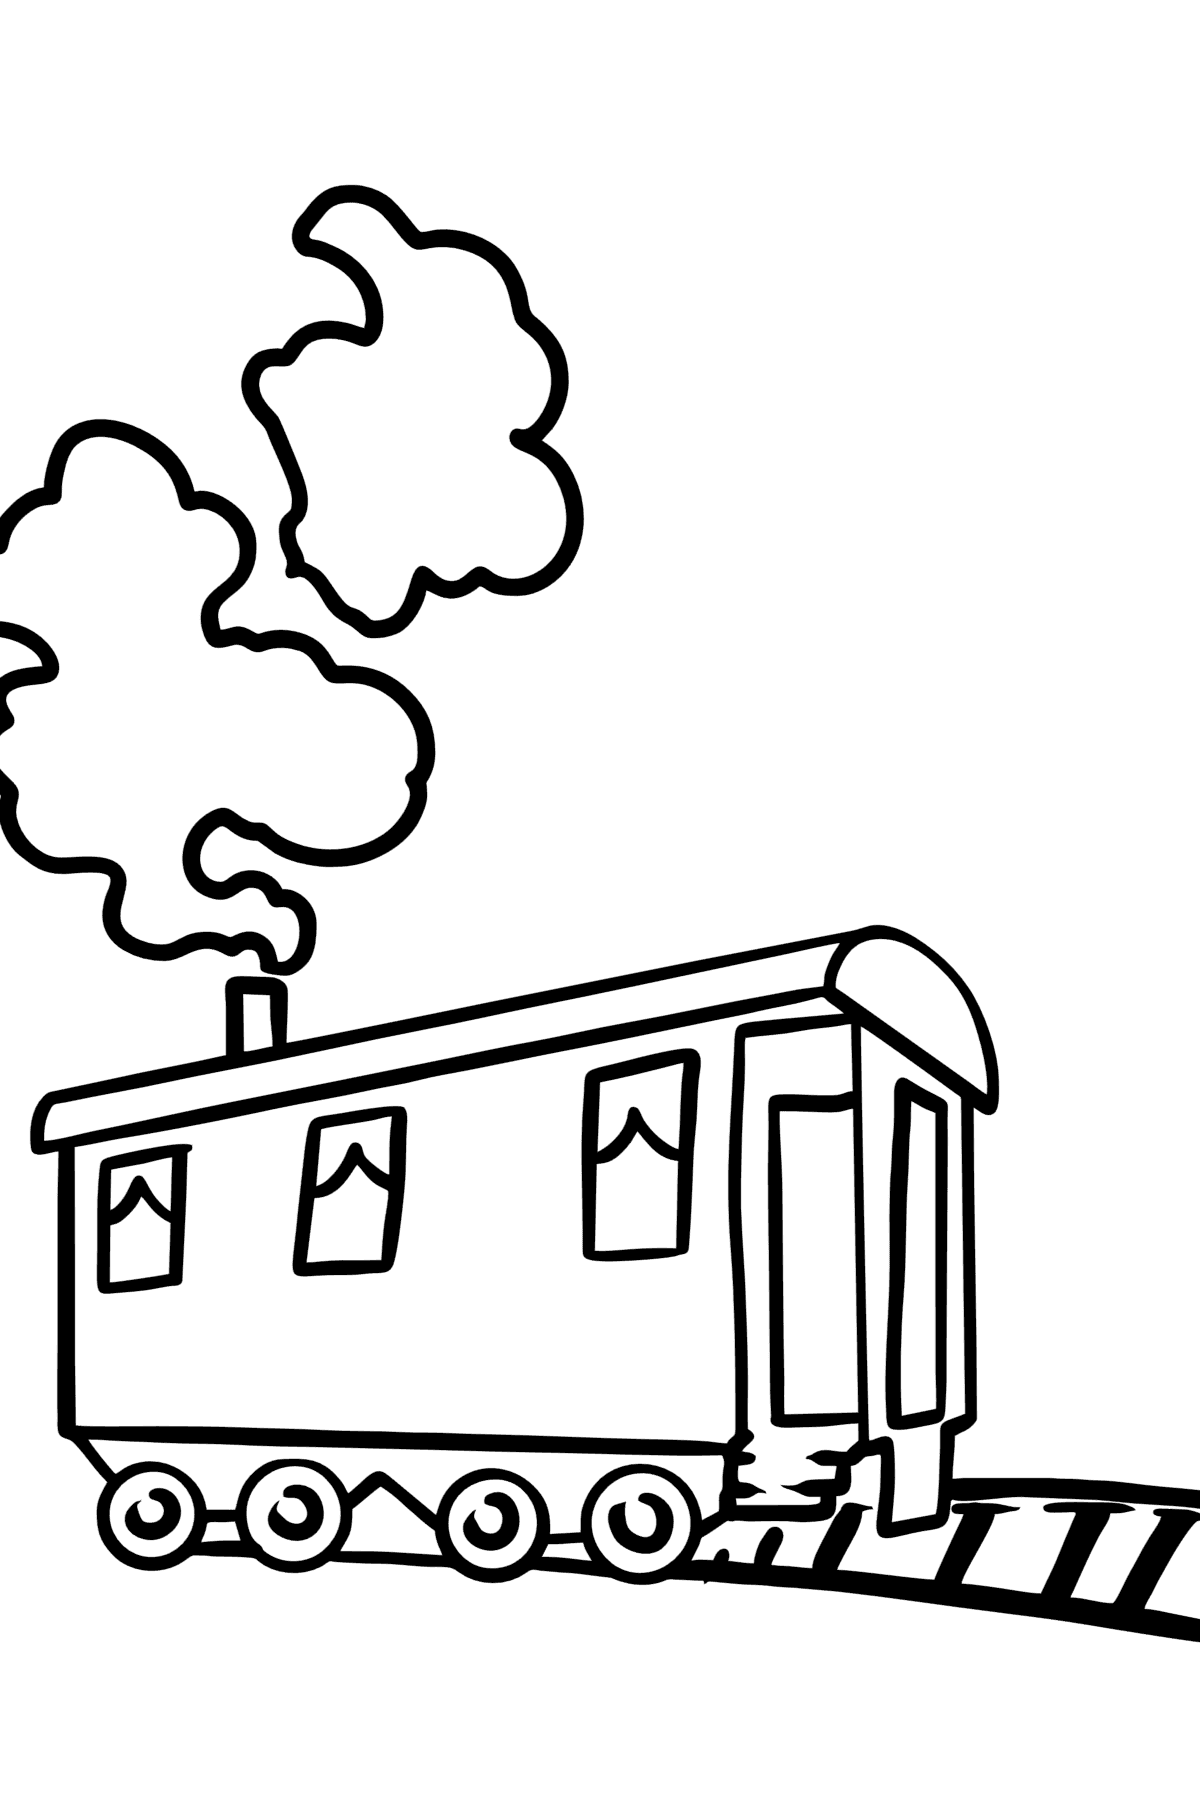 Boyama sayfası tren vagonu - Boyamalar çocuklar için